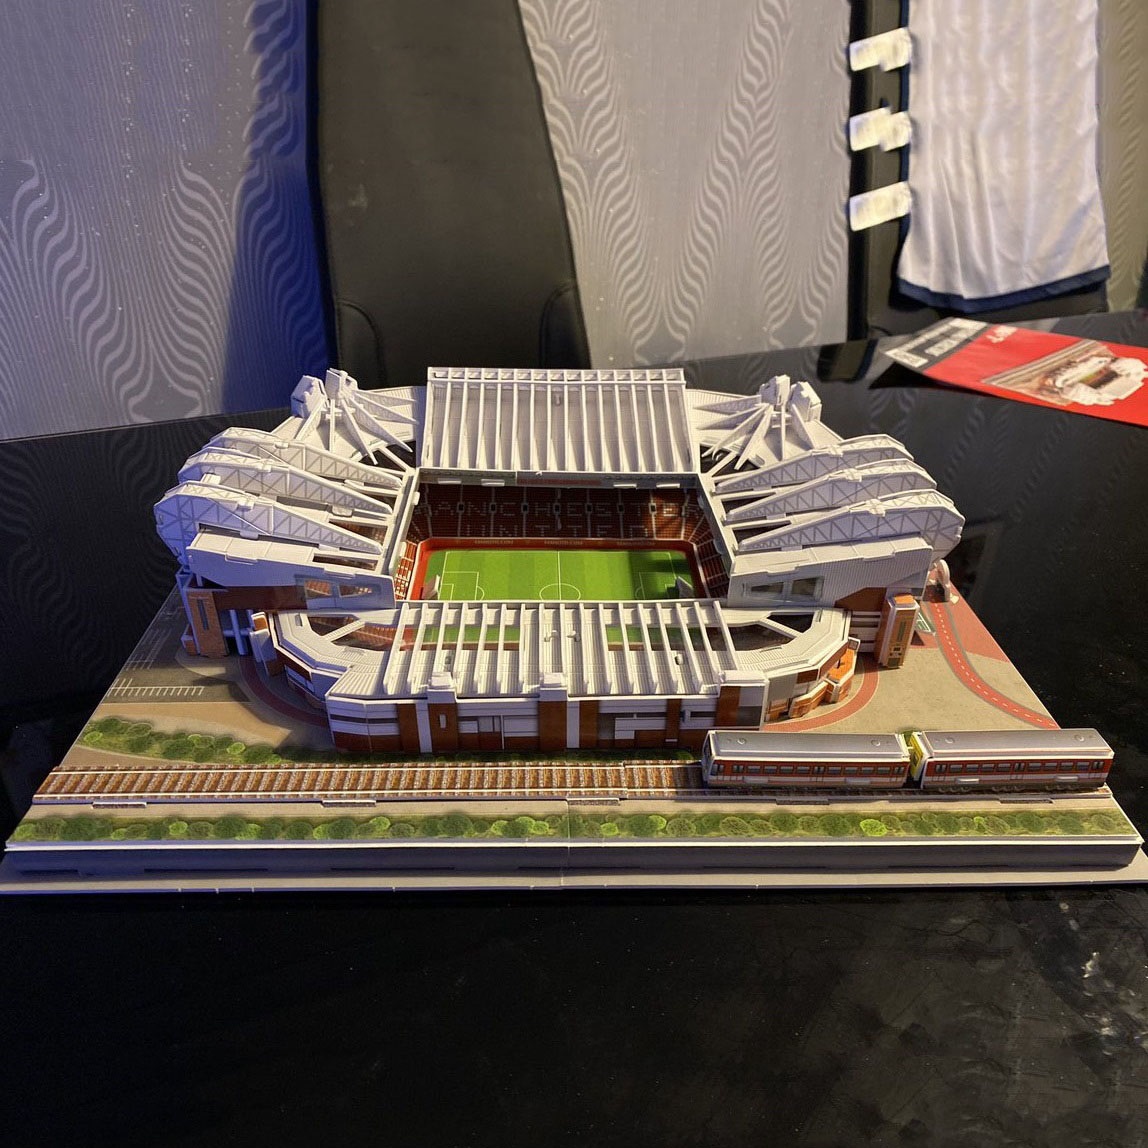 Đồ chơi lắp ráp Giấy 3D Mô hình Sân vận động Old Trafford Manchester United Kèm đèn LED